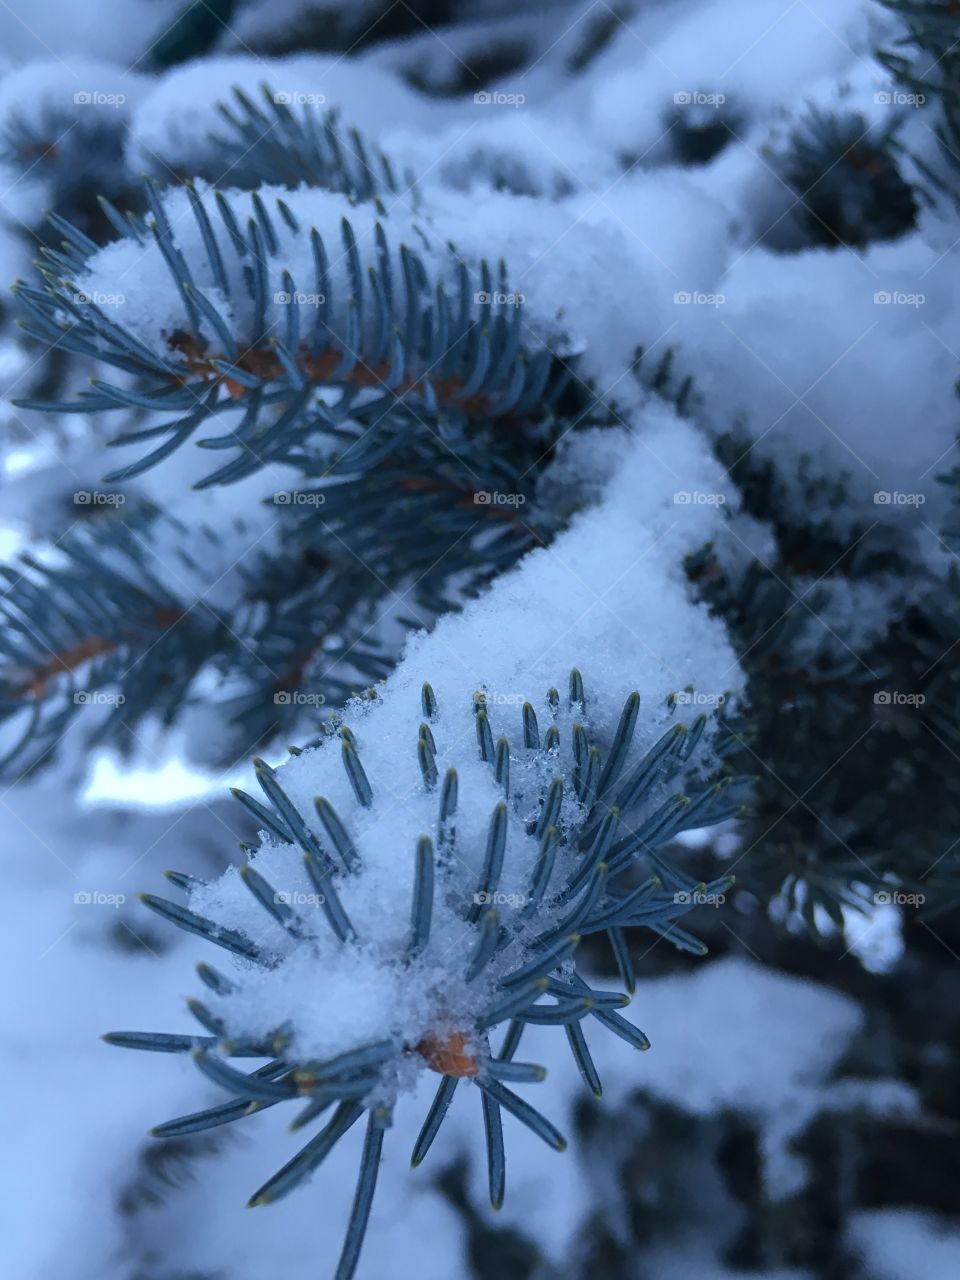 Snow on tree.